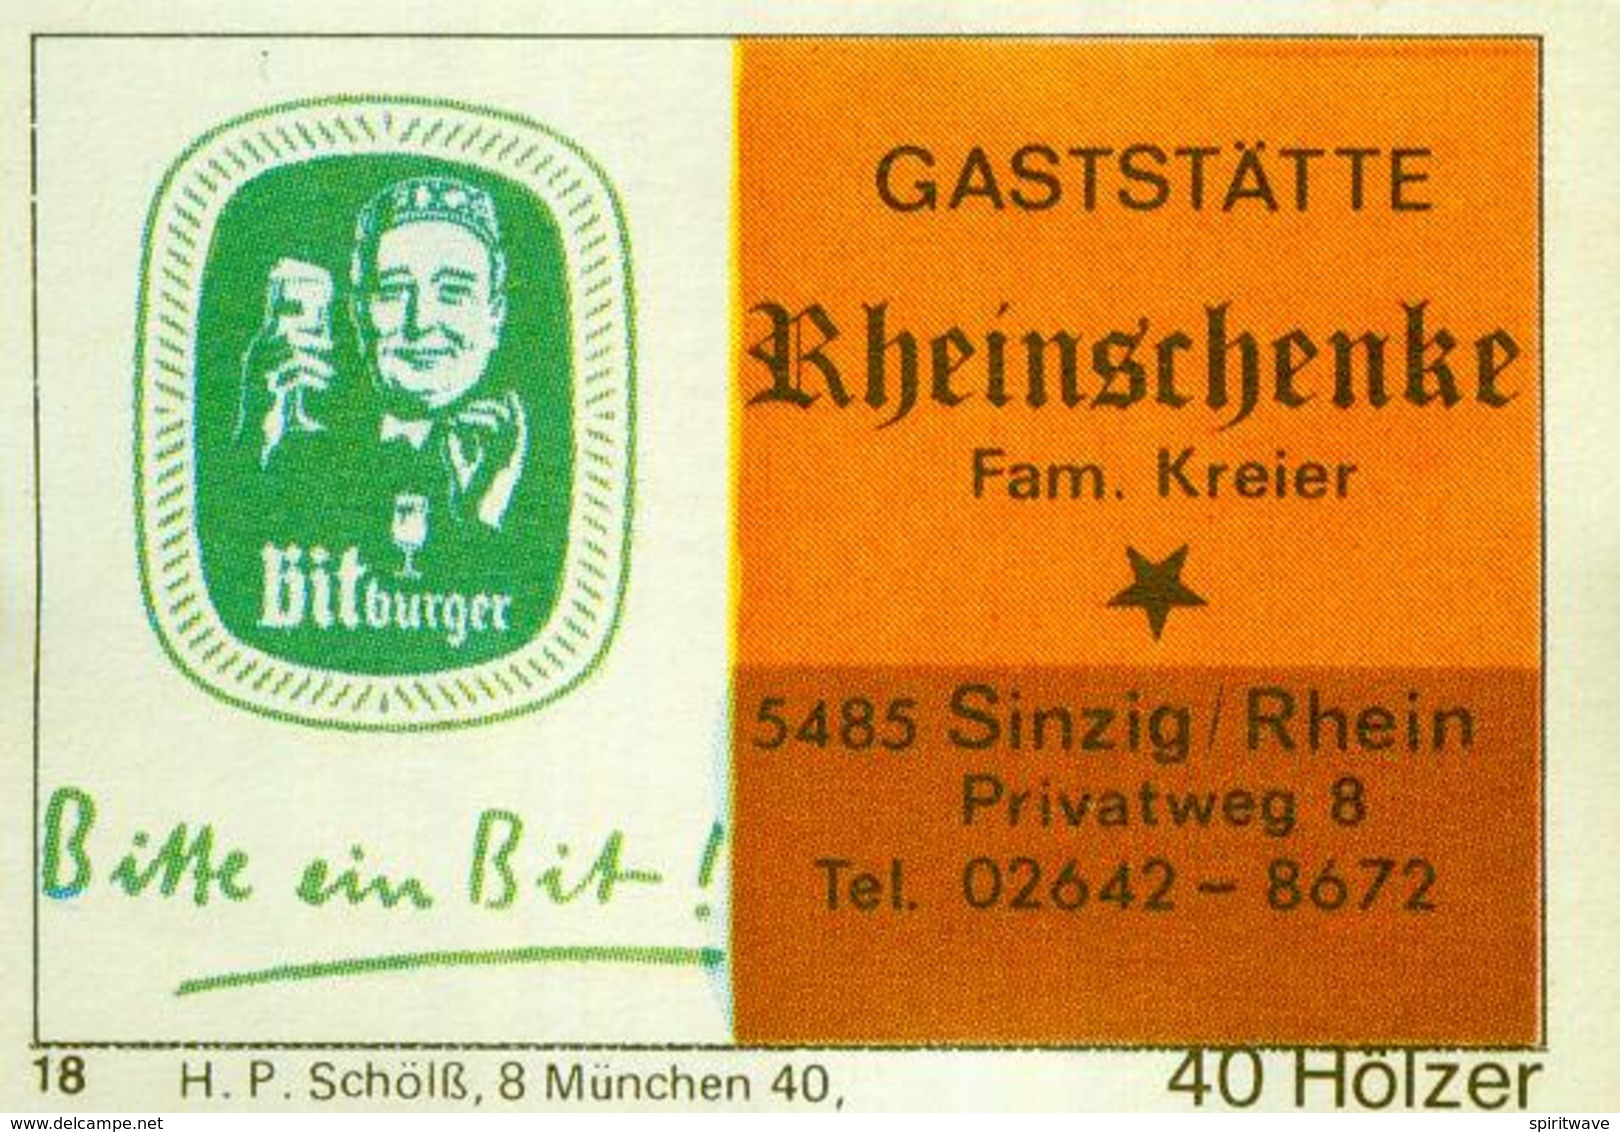 1 Altes Gasthausetikett, Gaststätte	Rheinschenke, Fam. Kreier, 5485 Sinzig/Rhein, Privatweg 8 #250 - Matchbox Labels